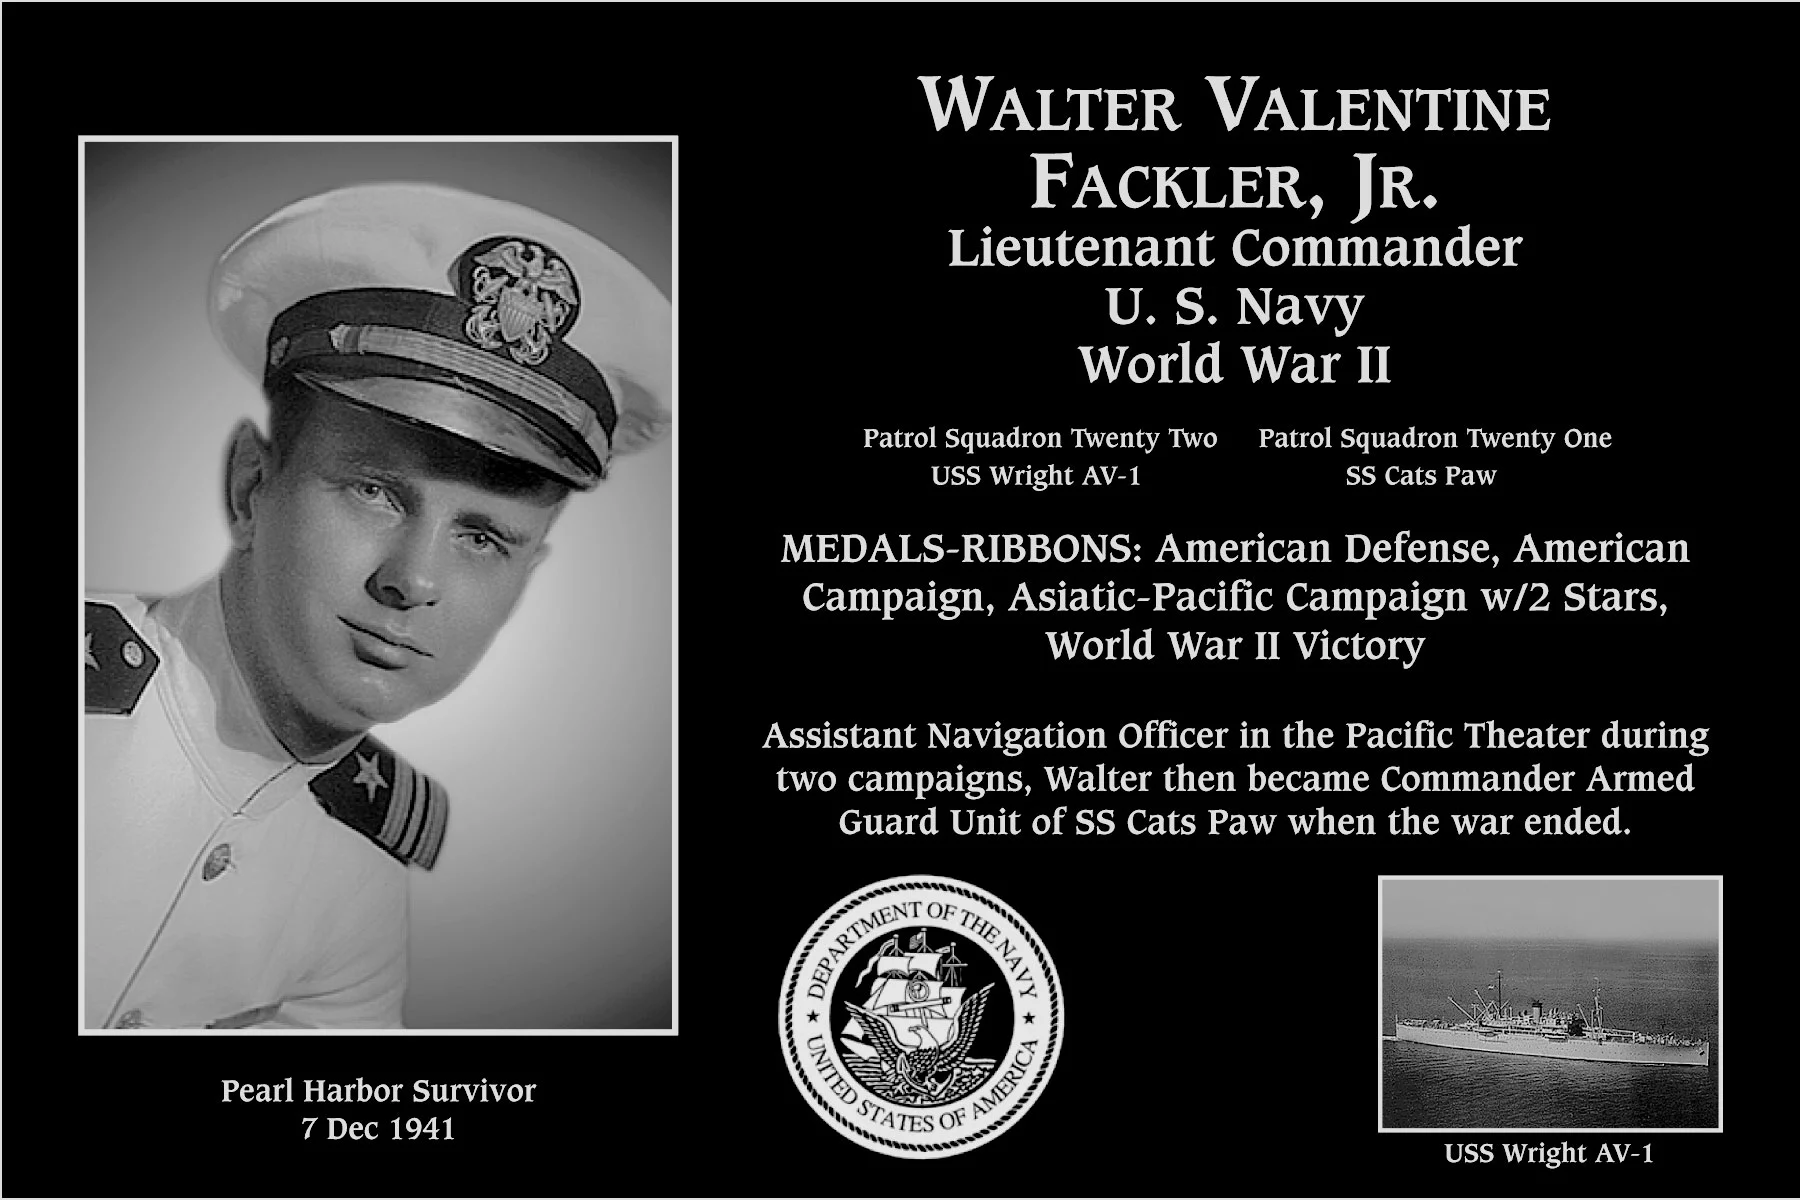 Walter Valentine Fackler, jr